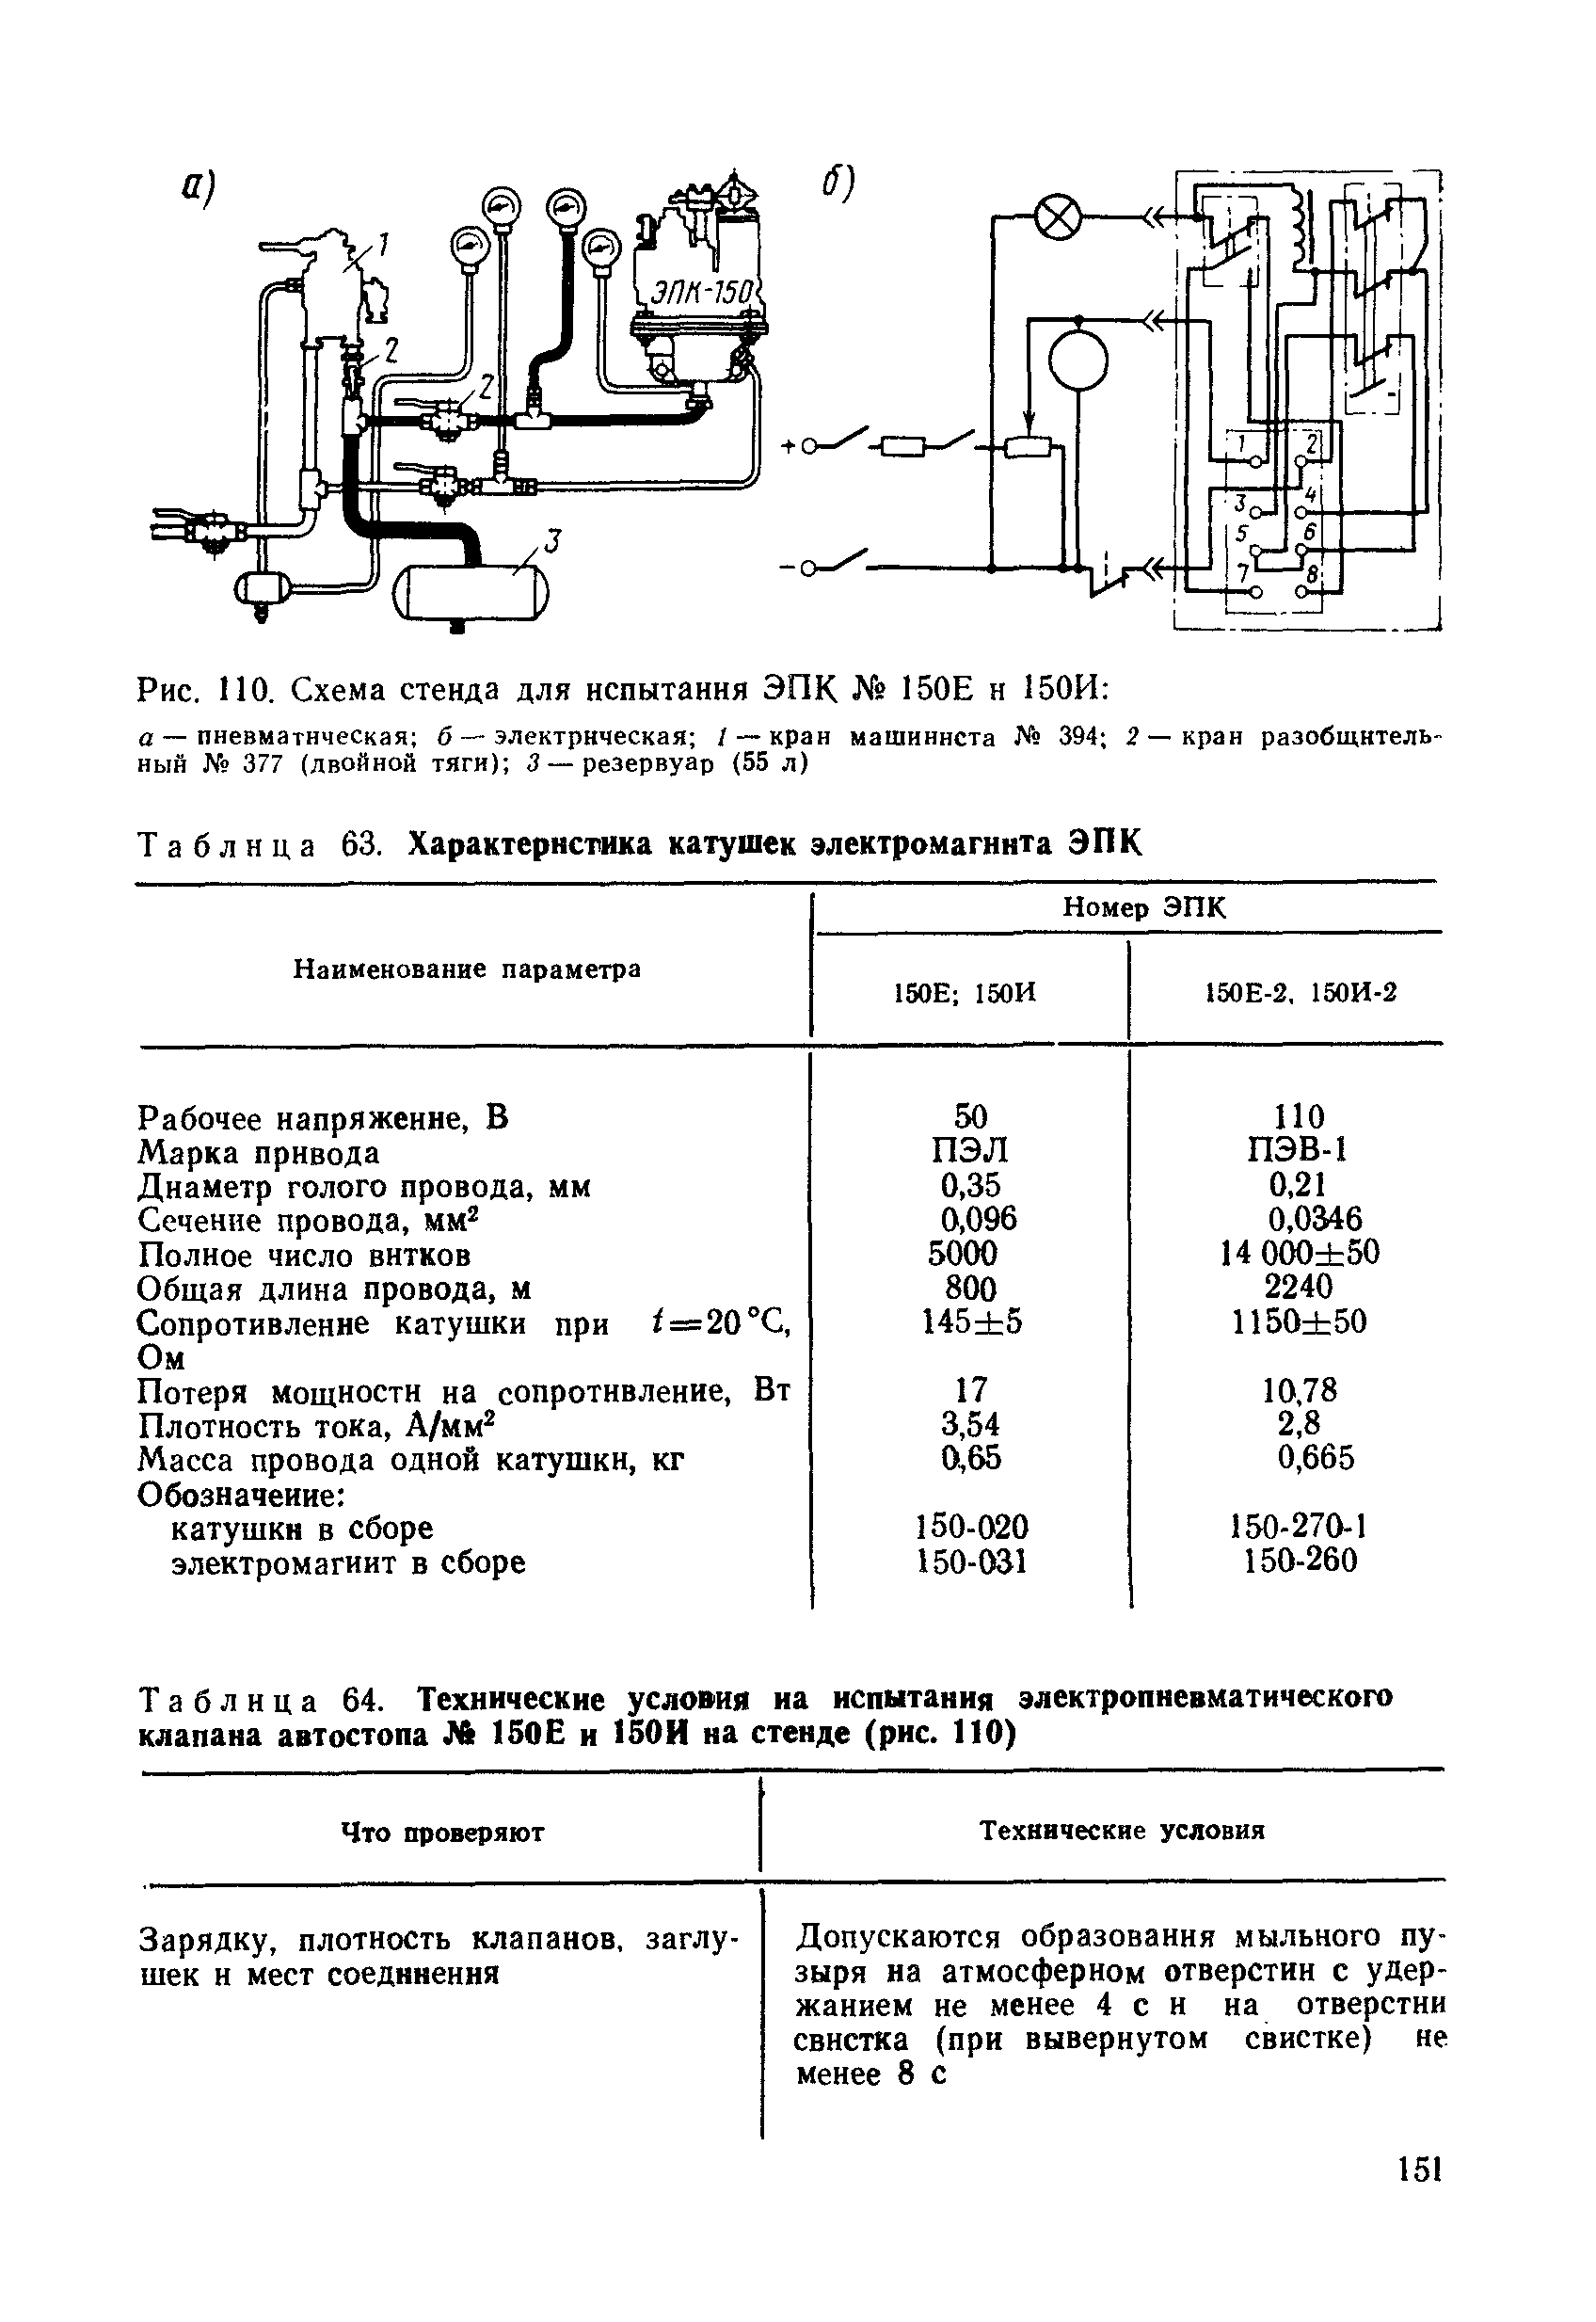 Таблица 63. Характеристика катушек электромагнита ЭПК
